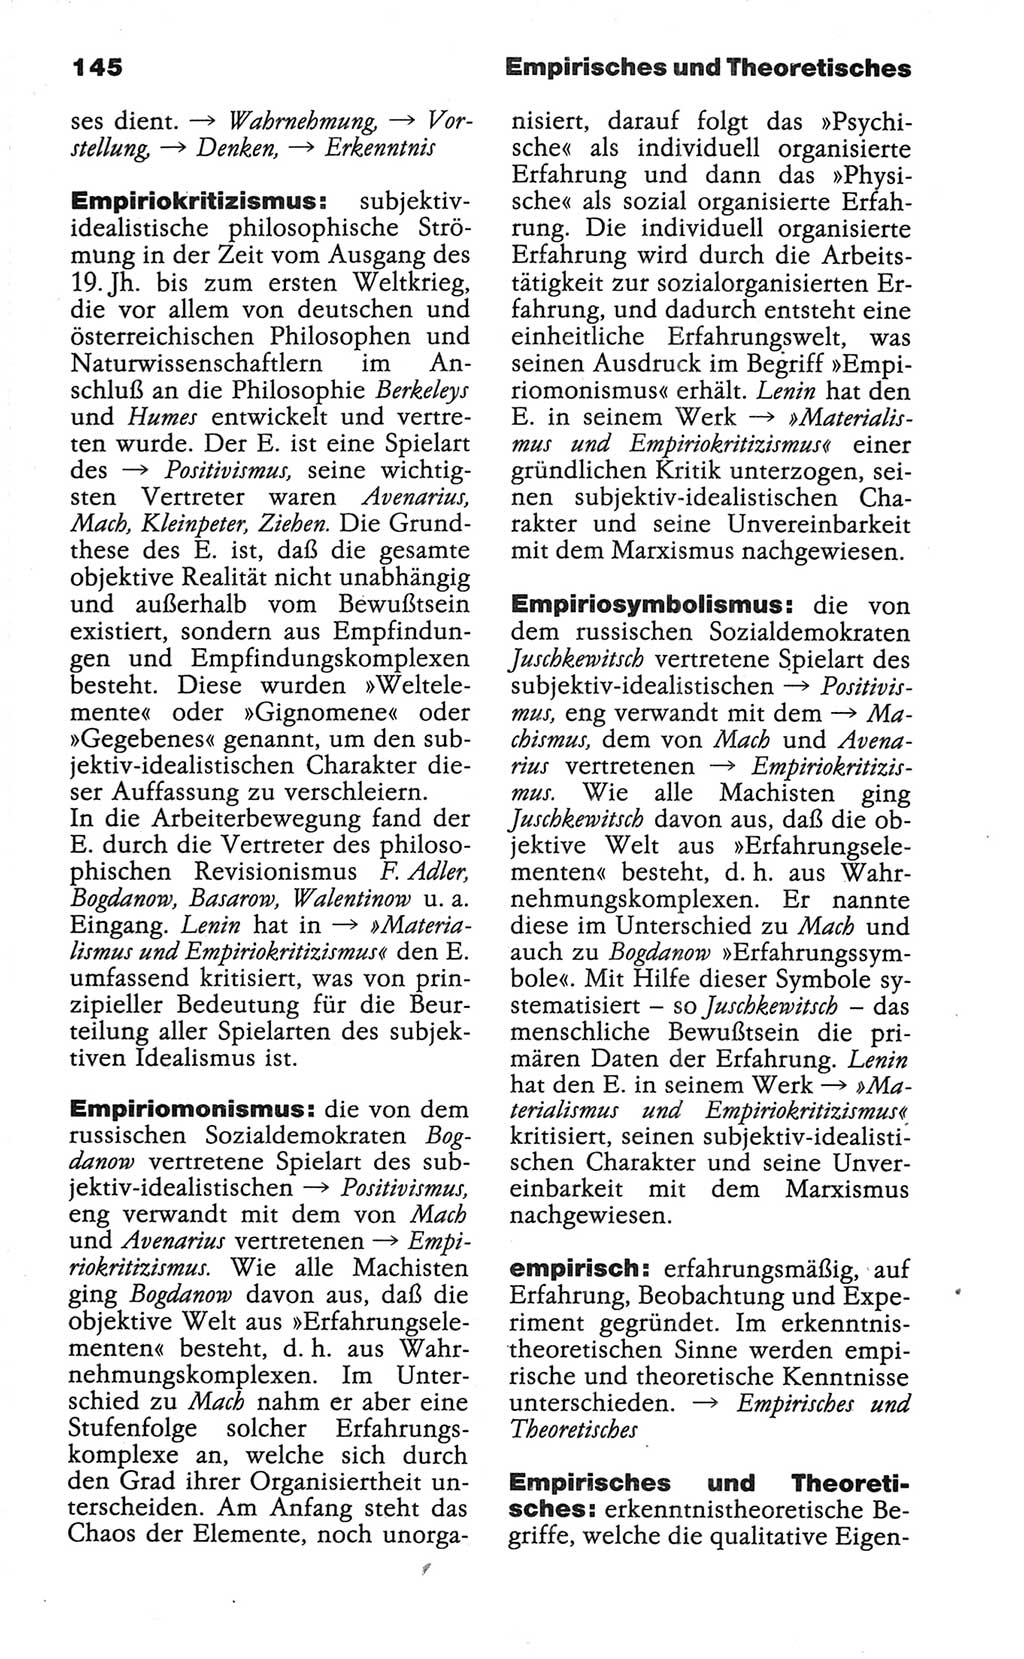 Wörterbuch der marxistisch-leninistischen Philosophie [Deutsche Demokratische Republik (DDR)] 1986, Seite 145 (Wb. ML Phil. DDR 1986, S. 145)